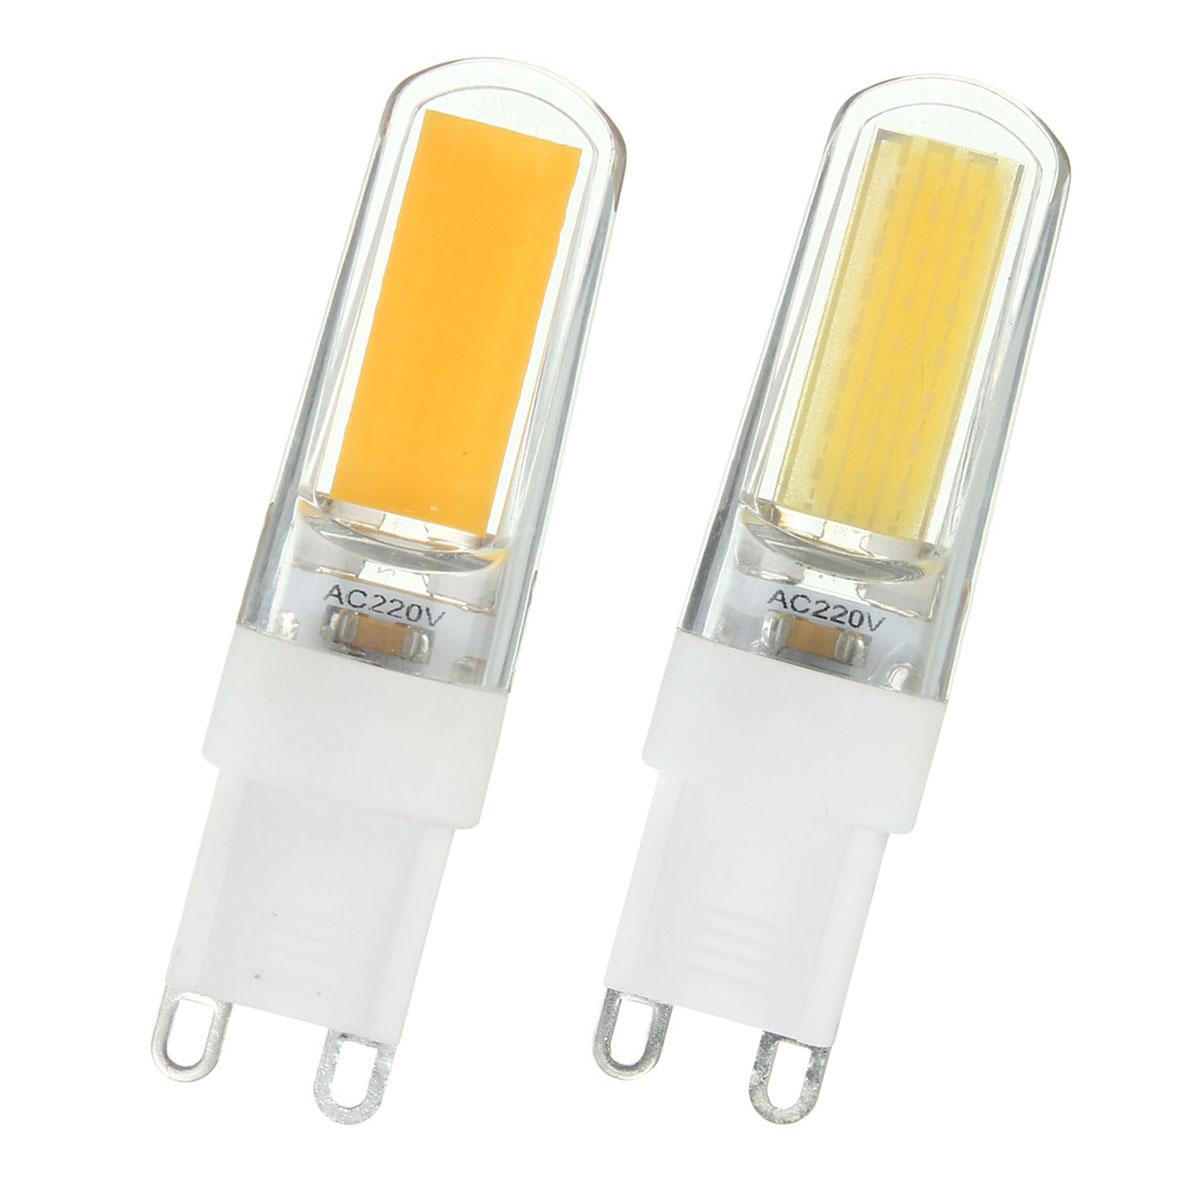 G9-LED-3W-Pure-White-Warm-White-COB-LED-PC-Material-Light-Lamp-Bulb-AC220V-1062195-5